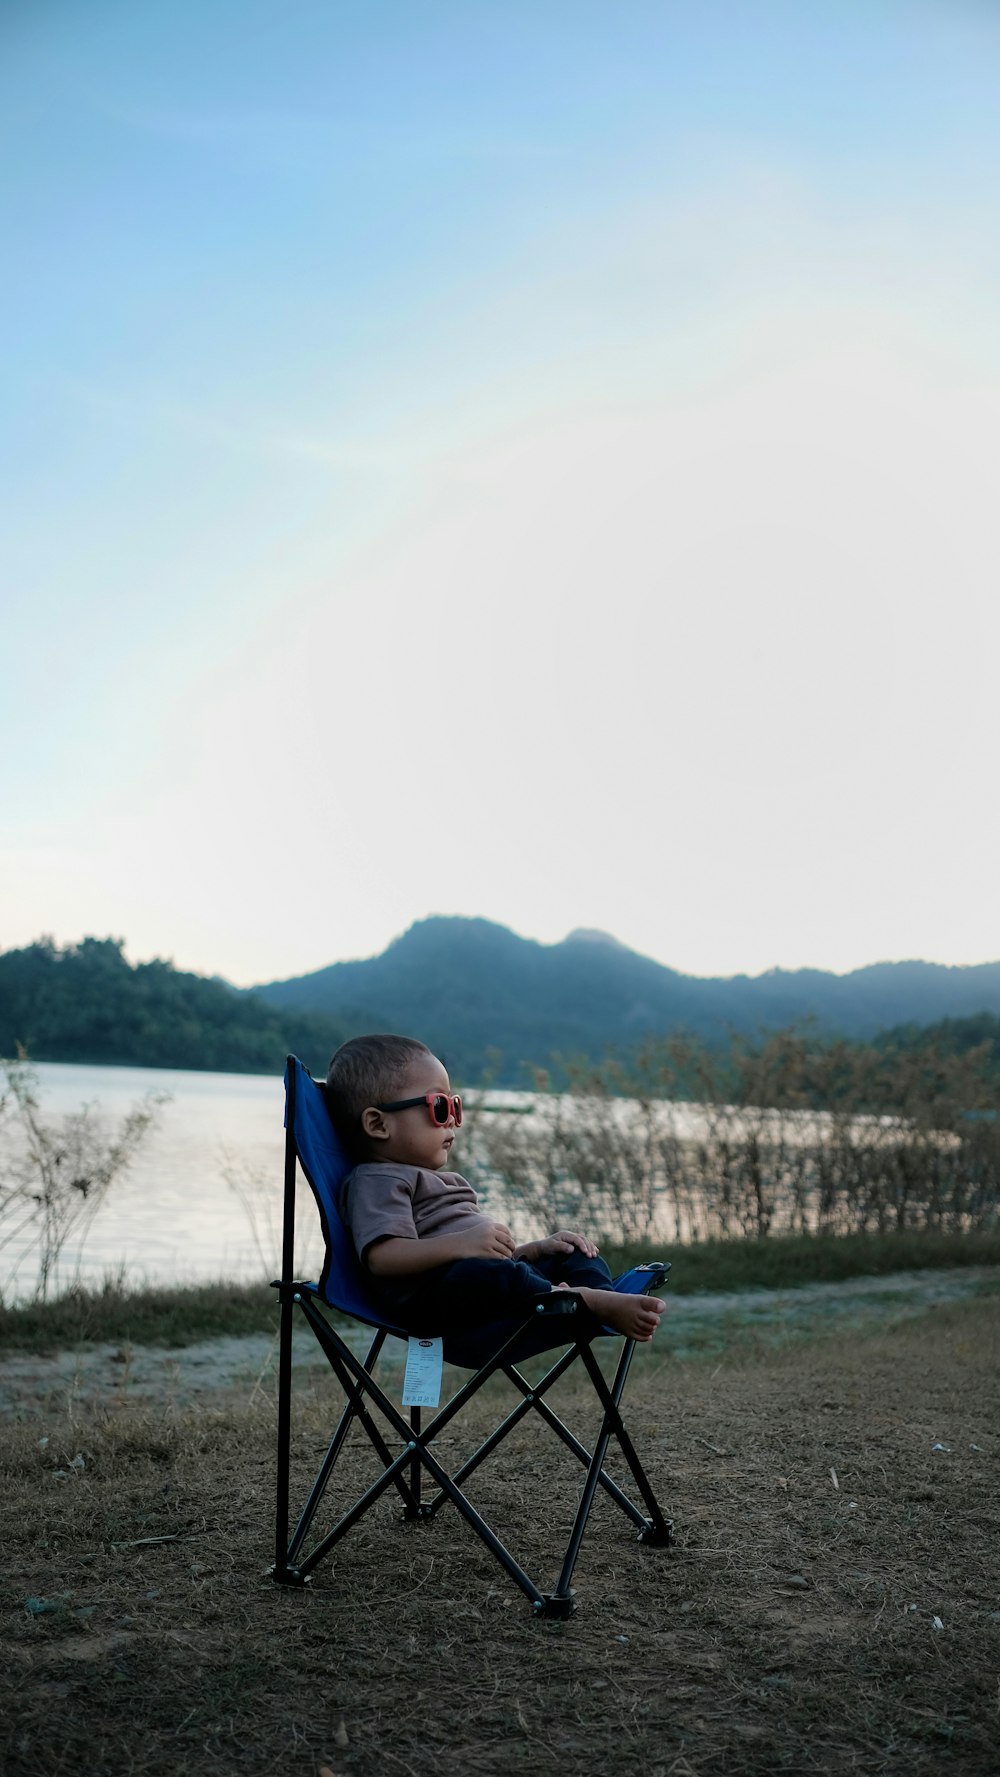 criança sentada na cadeira de acampamento preta e azul